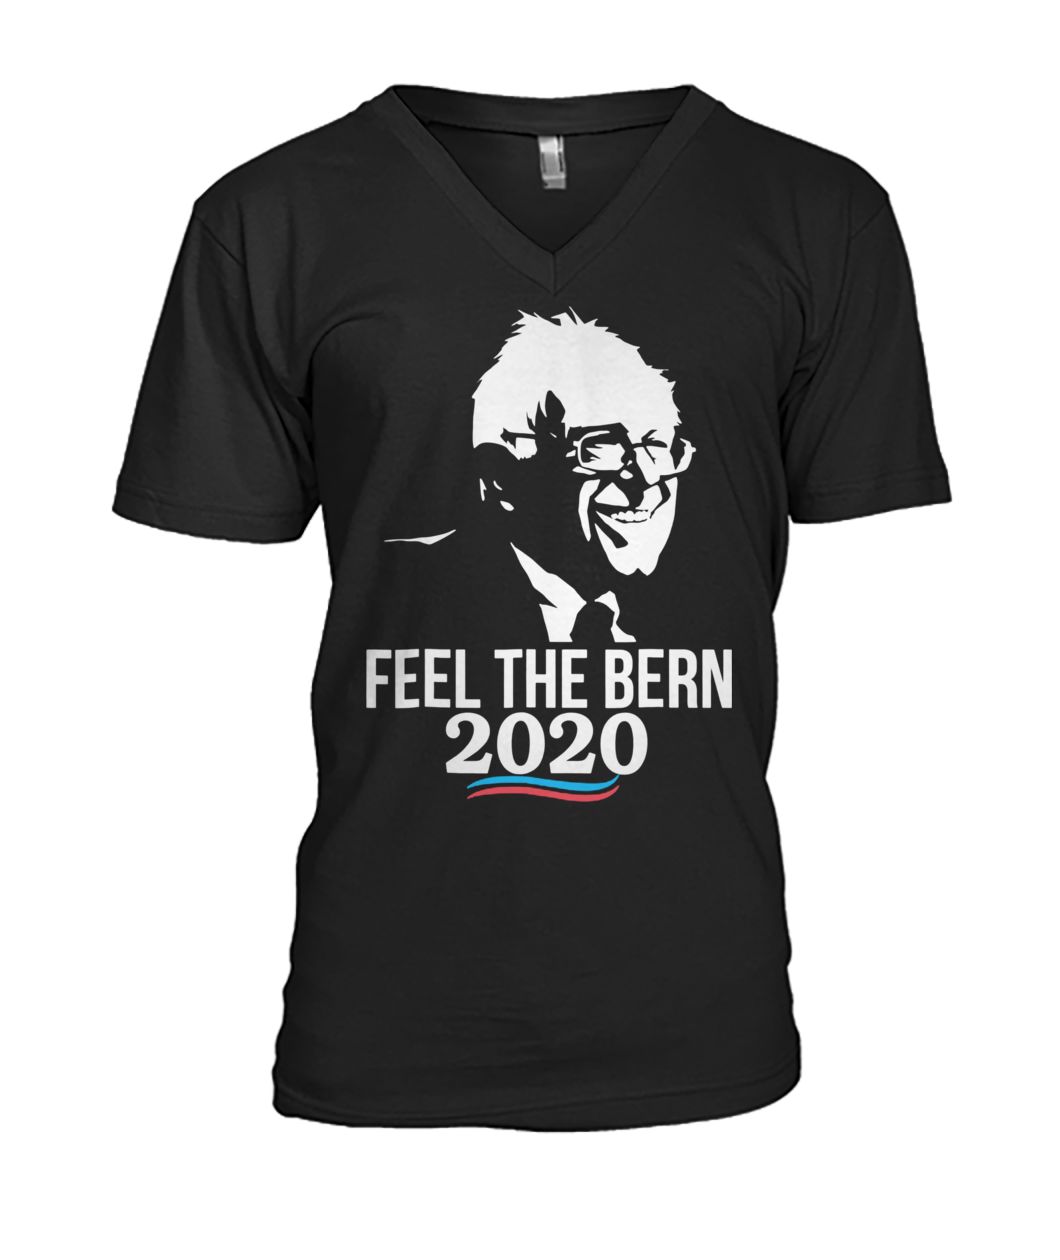 Feel the bern bernie sanders for president 2020 mens v-neck